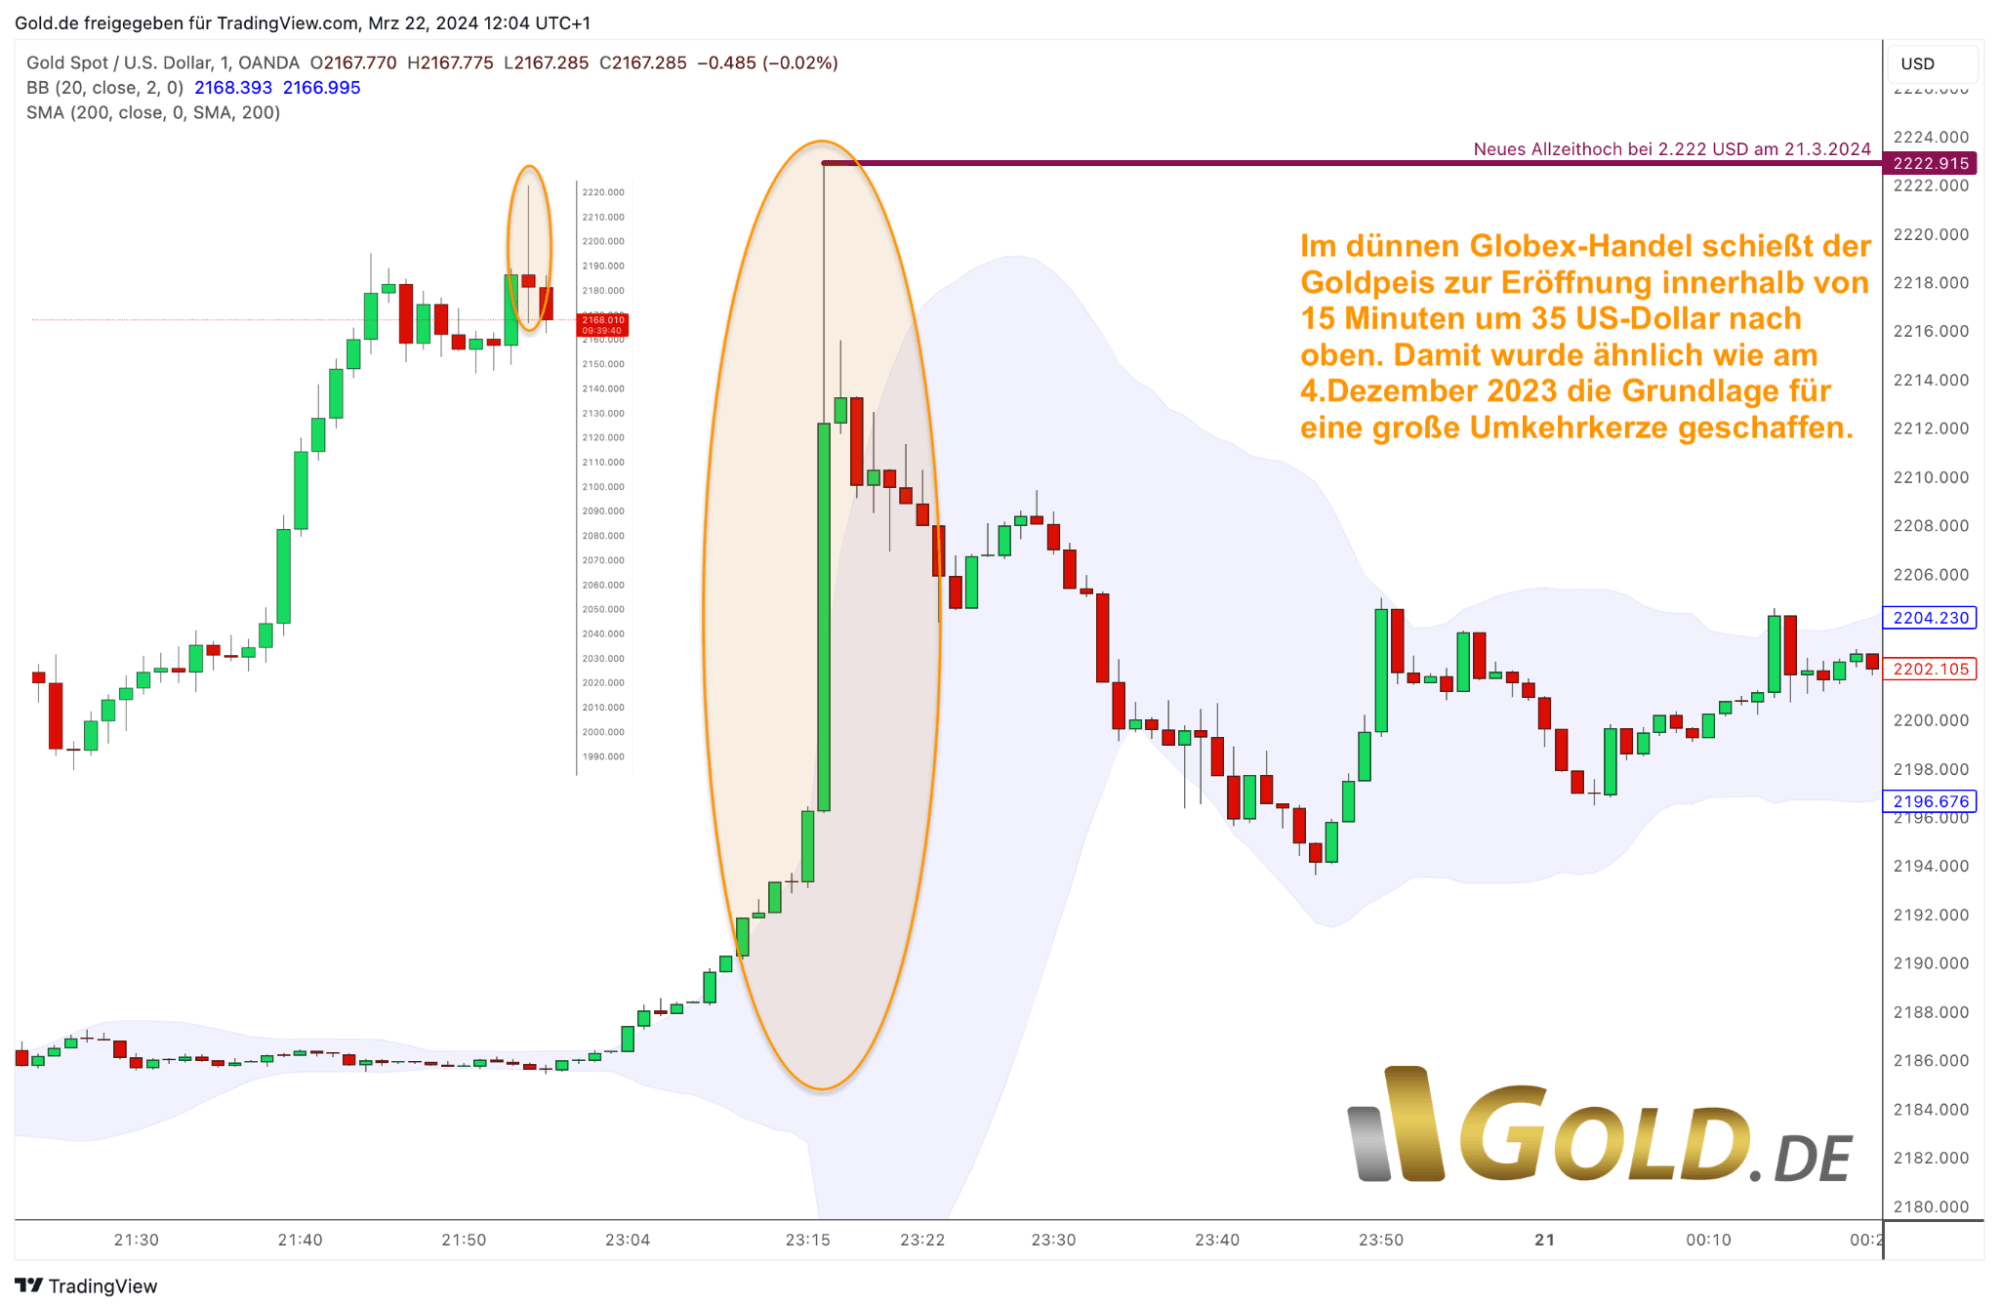 Gold in US-Dollar, 1-min Chart vom 22. März 2024